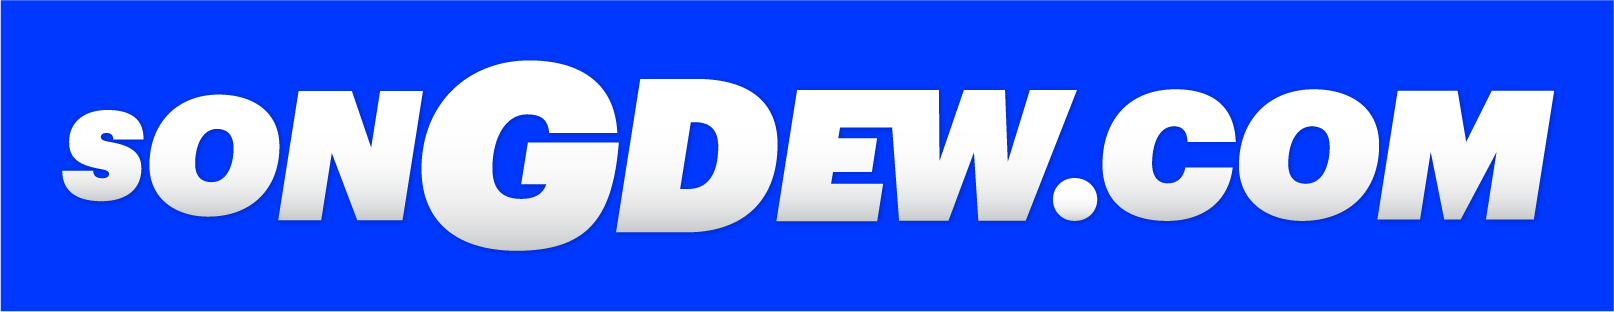 songdew logo's